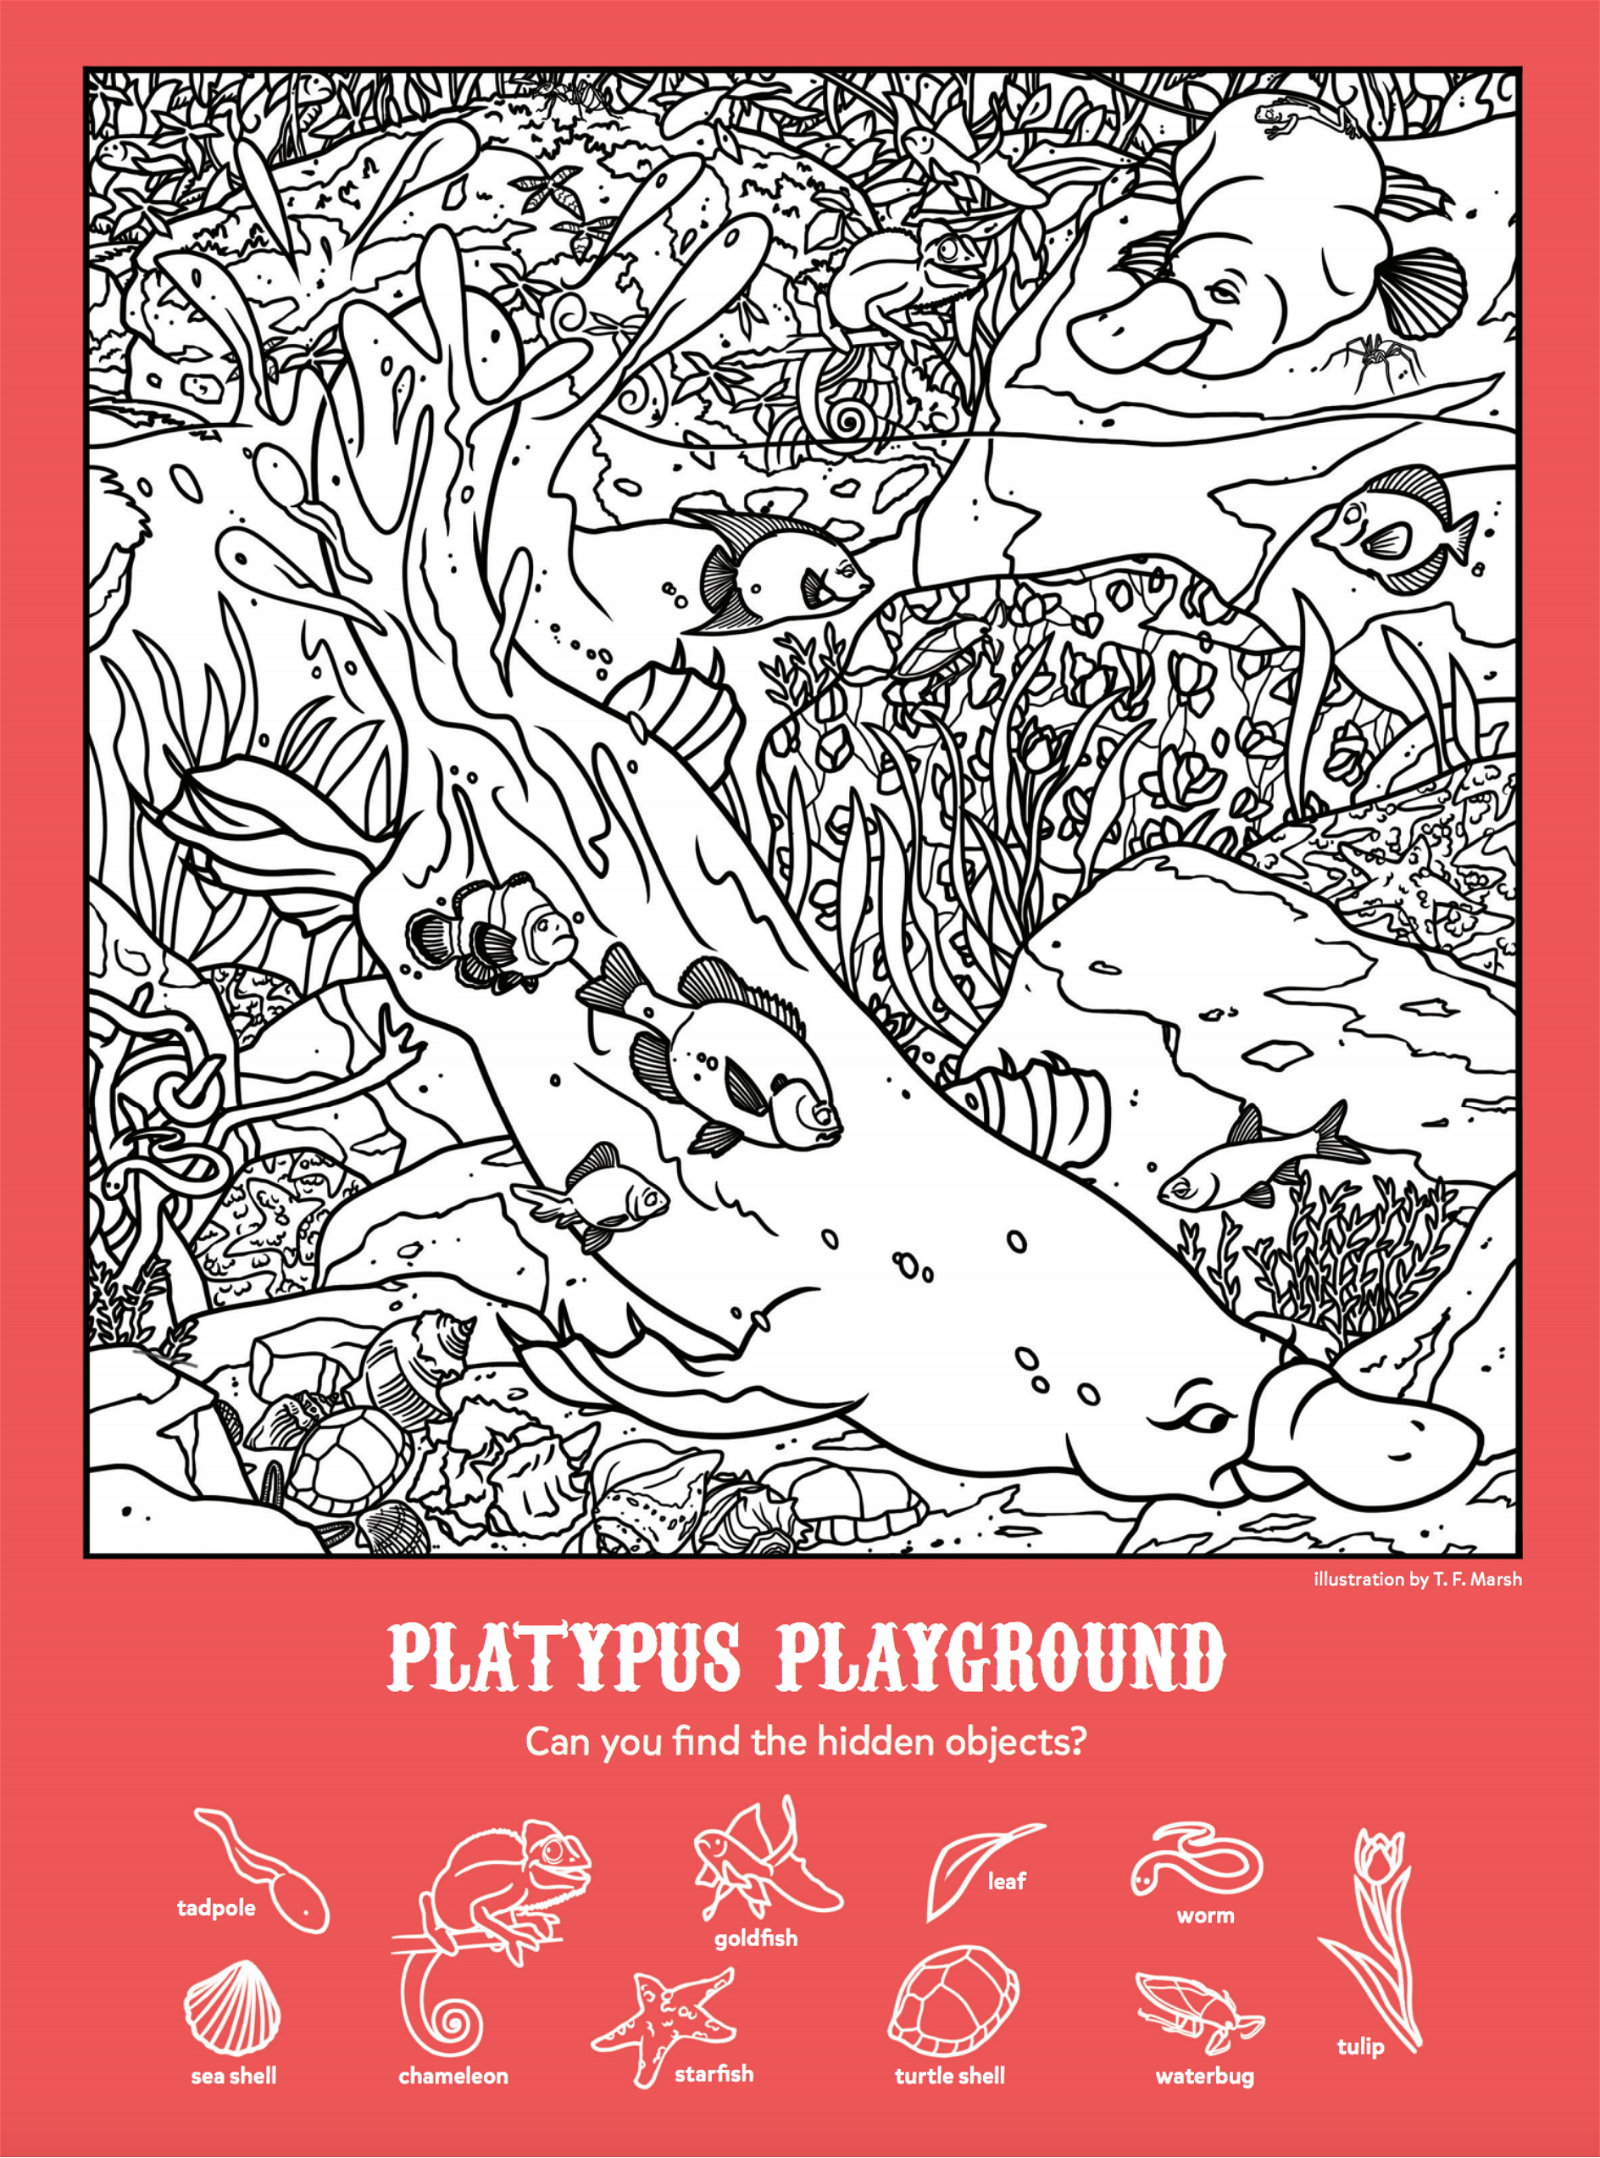 Platypus Playground